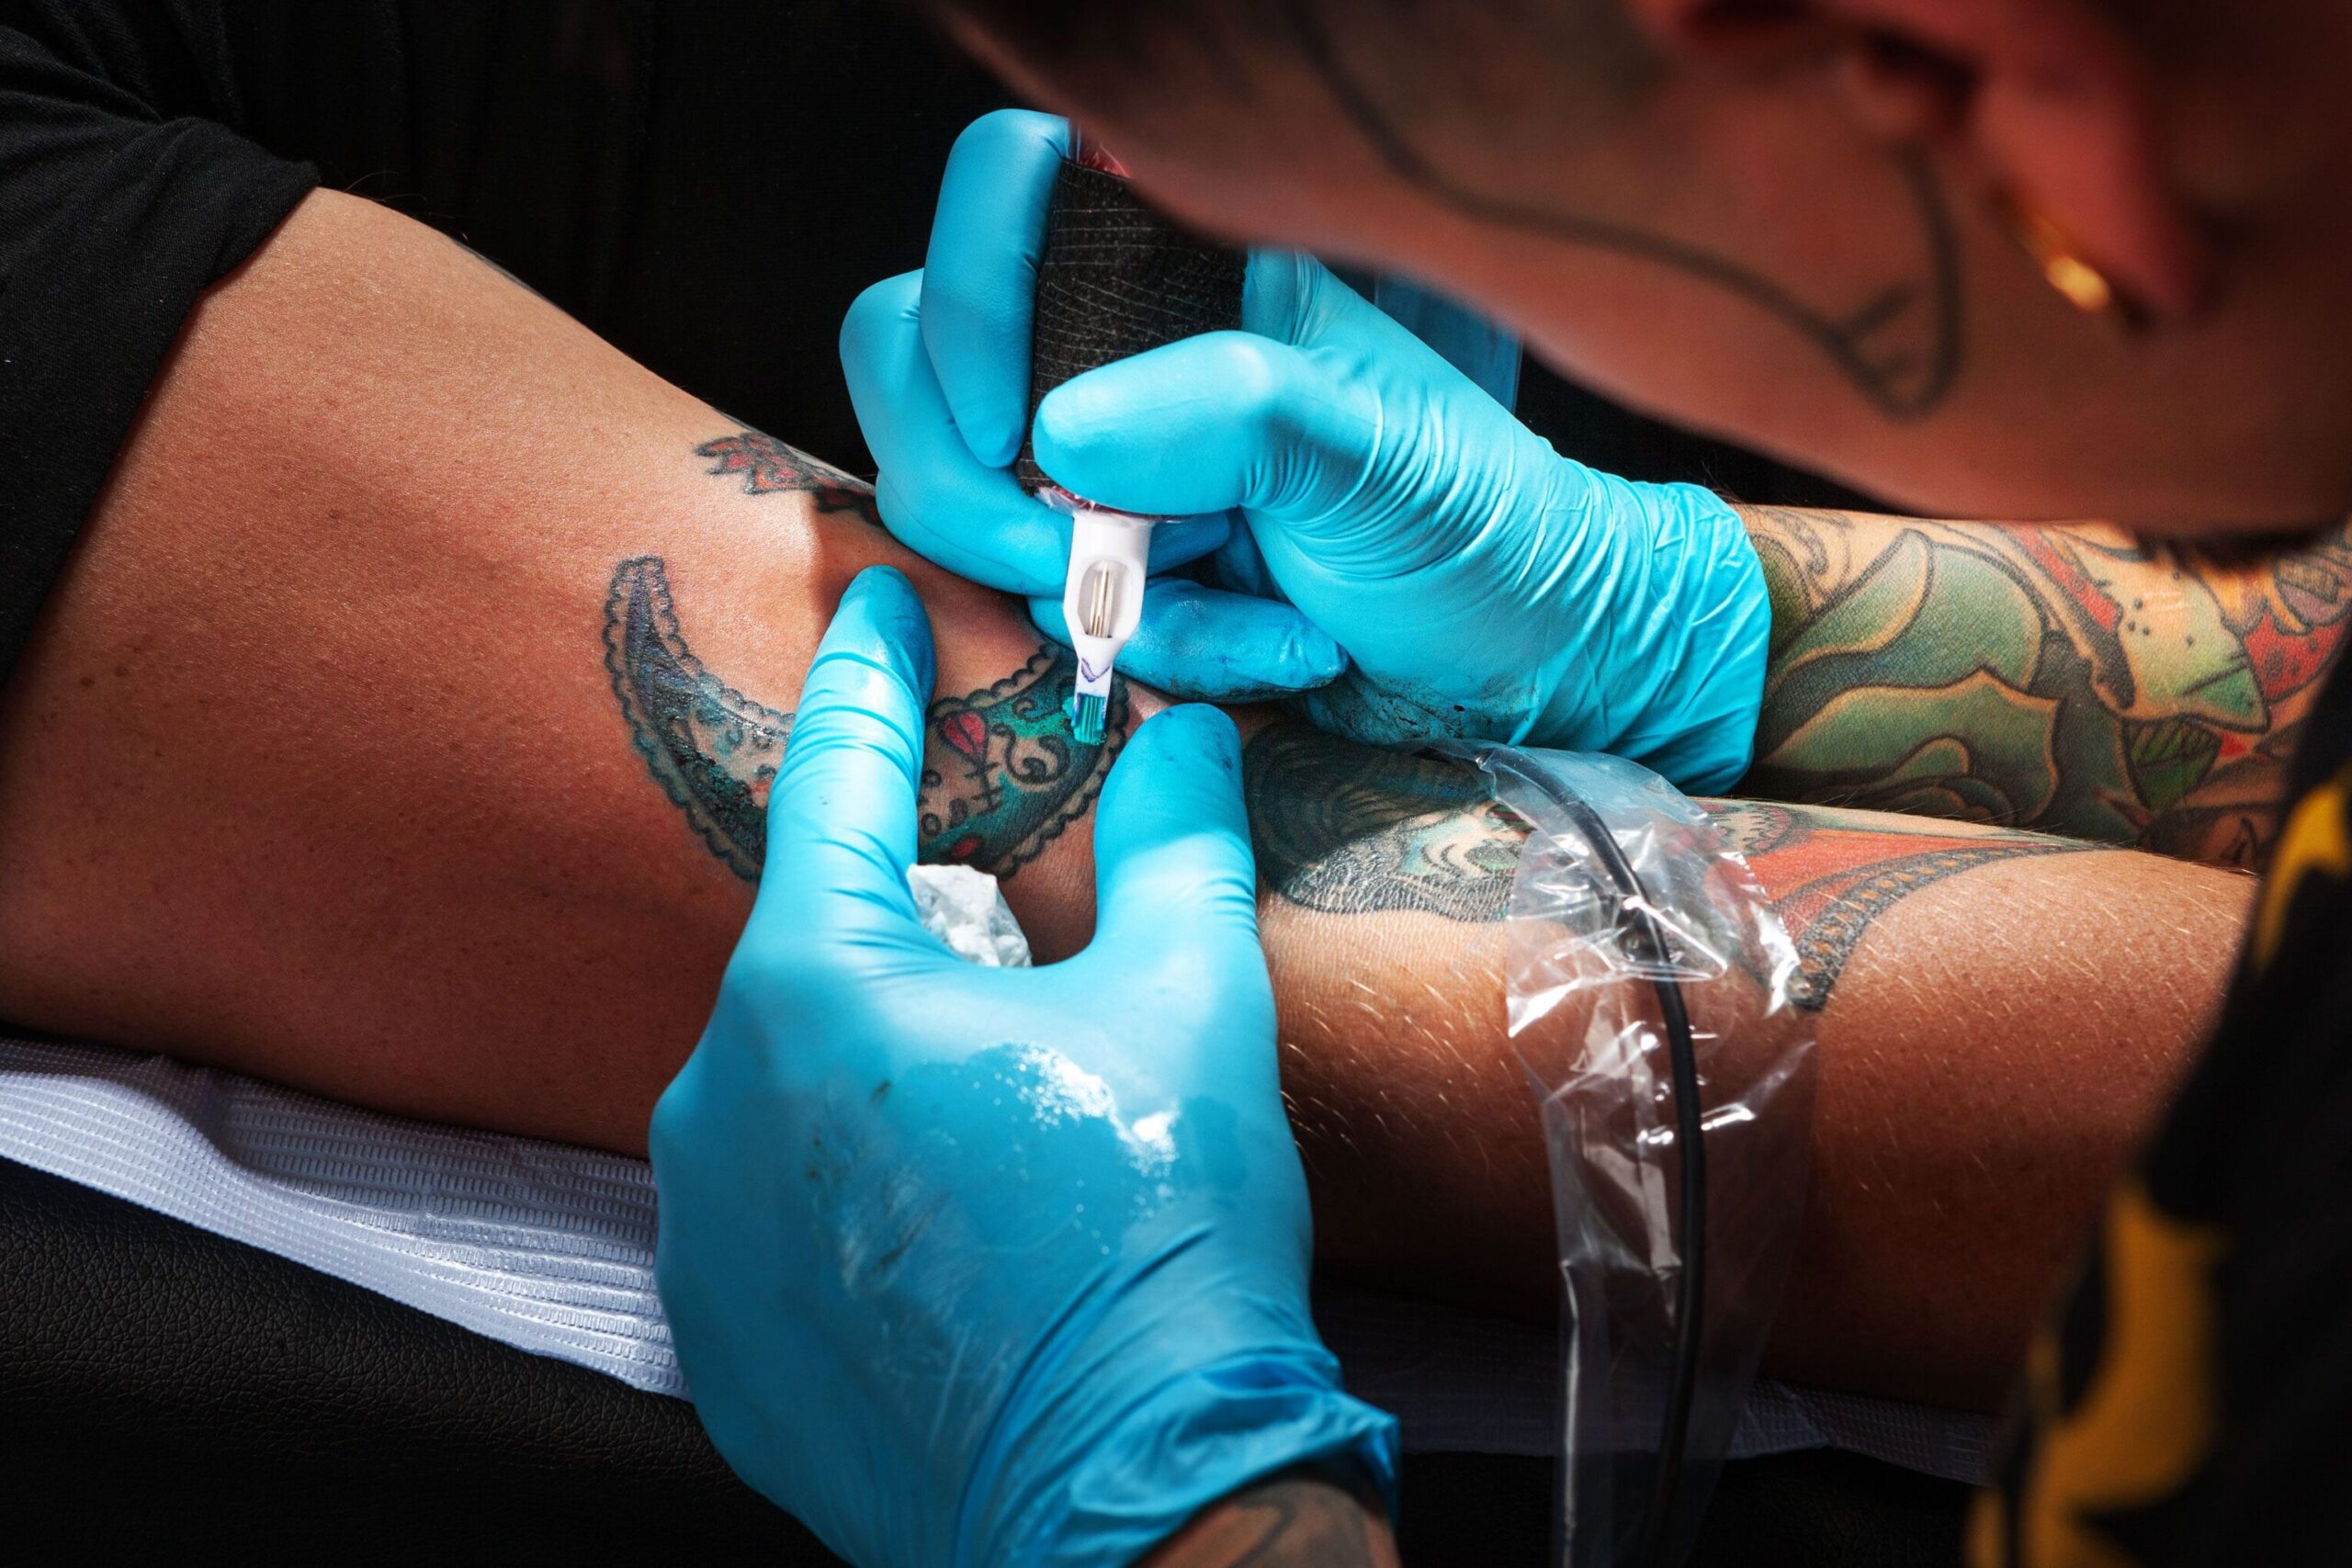 Tatuajes infectados: 5 cosas a tener en cuenta después de tatuarse